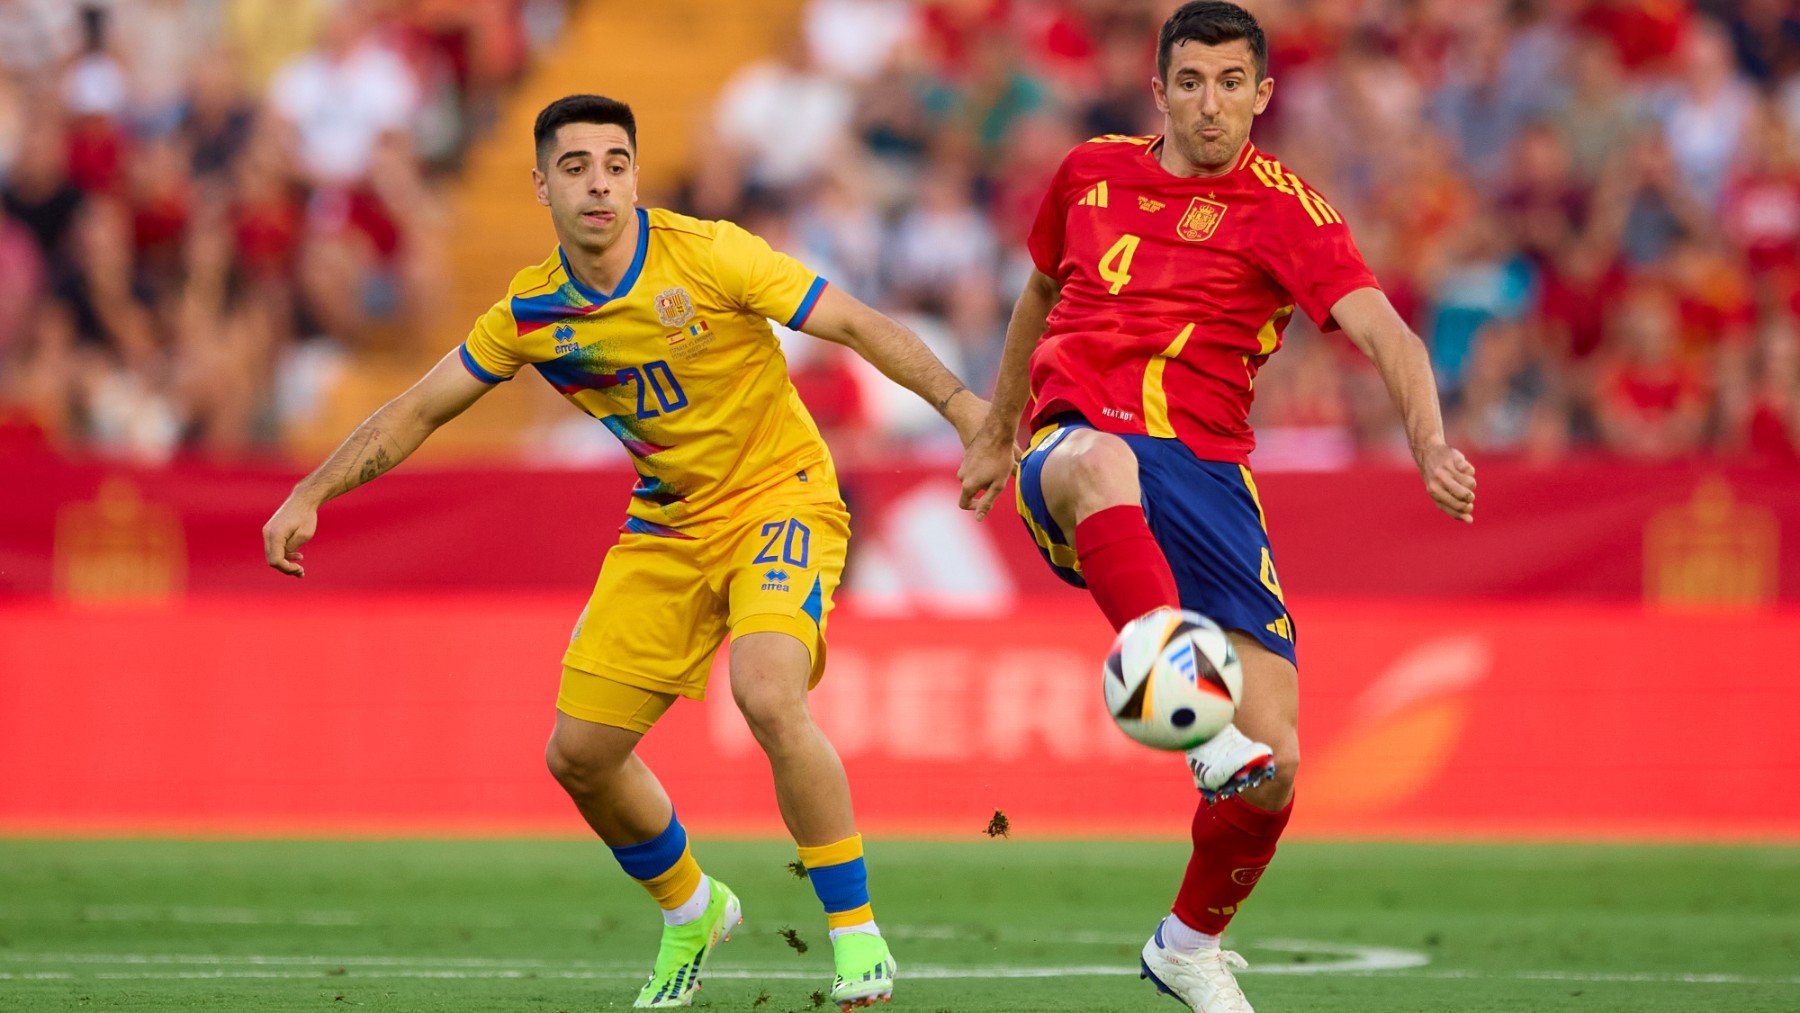 España – Andorra en directo hoy: ver gratis el partido amistoso de la selección española en vivo. (Foto: Getty)